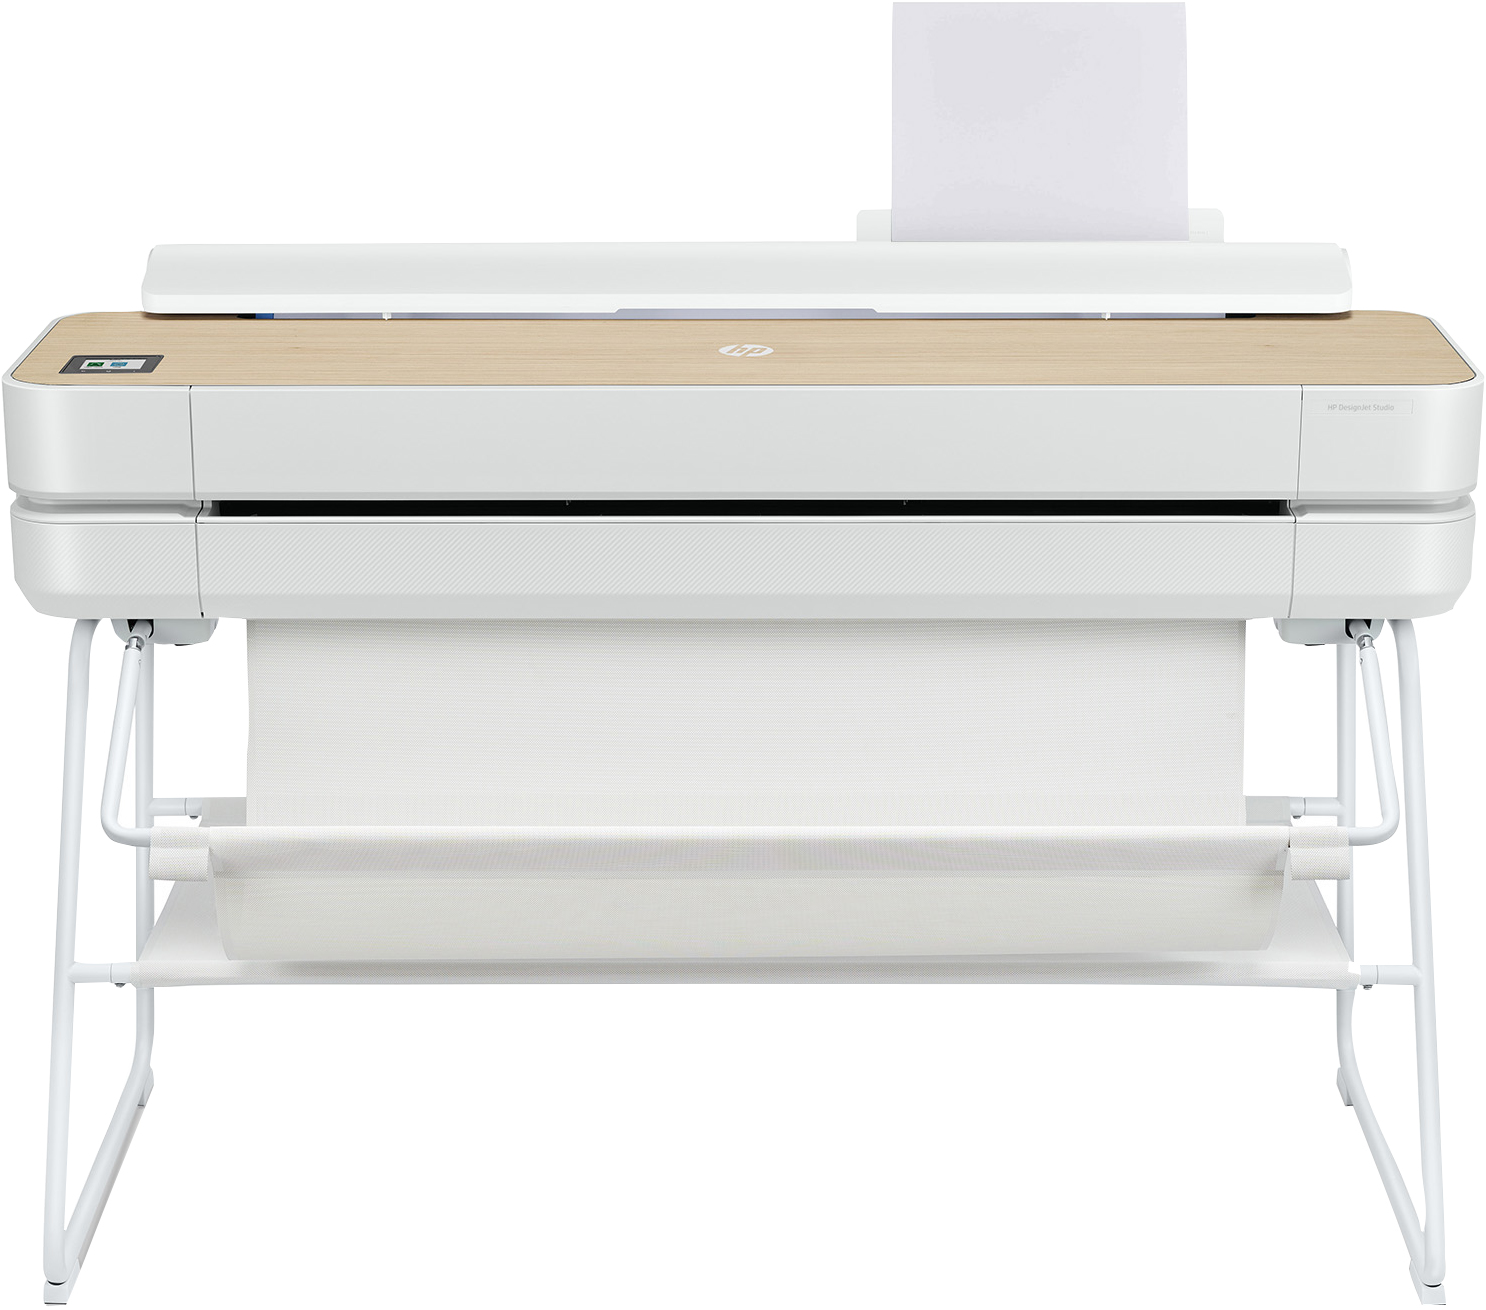  DesignJet Studio 36-in Printer